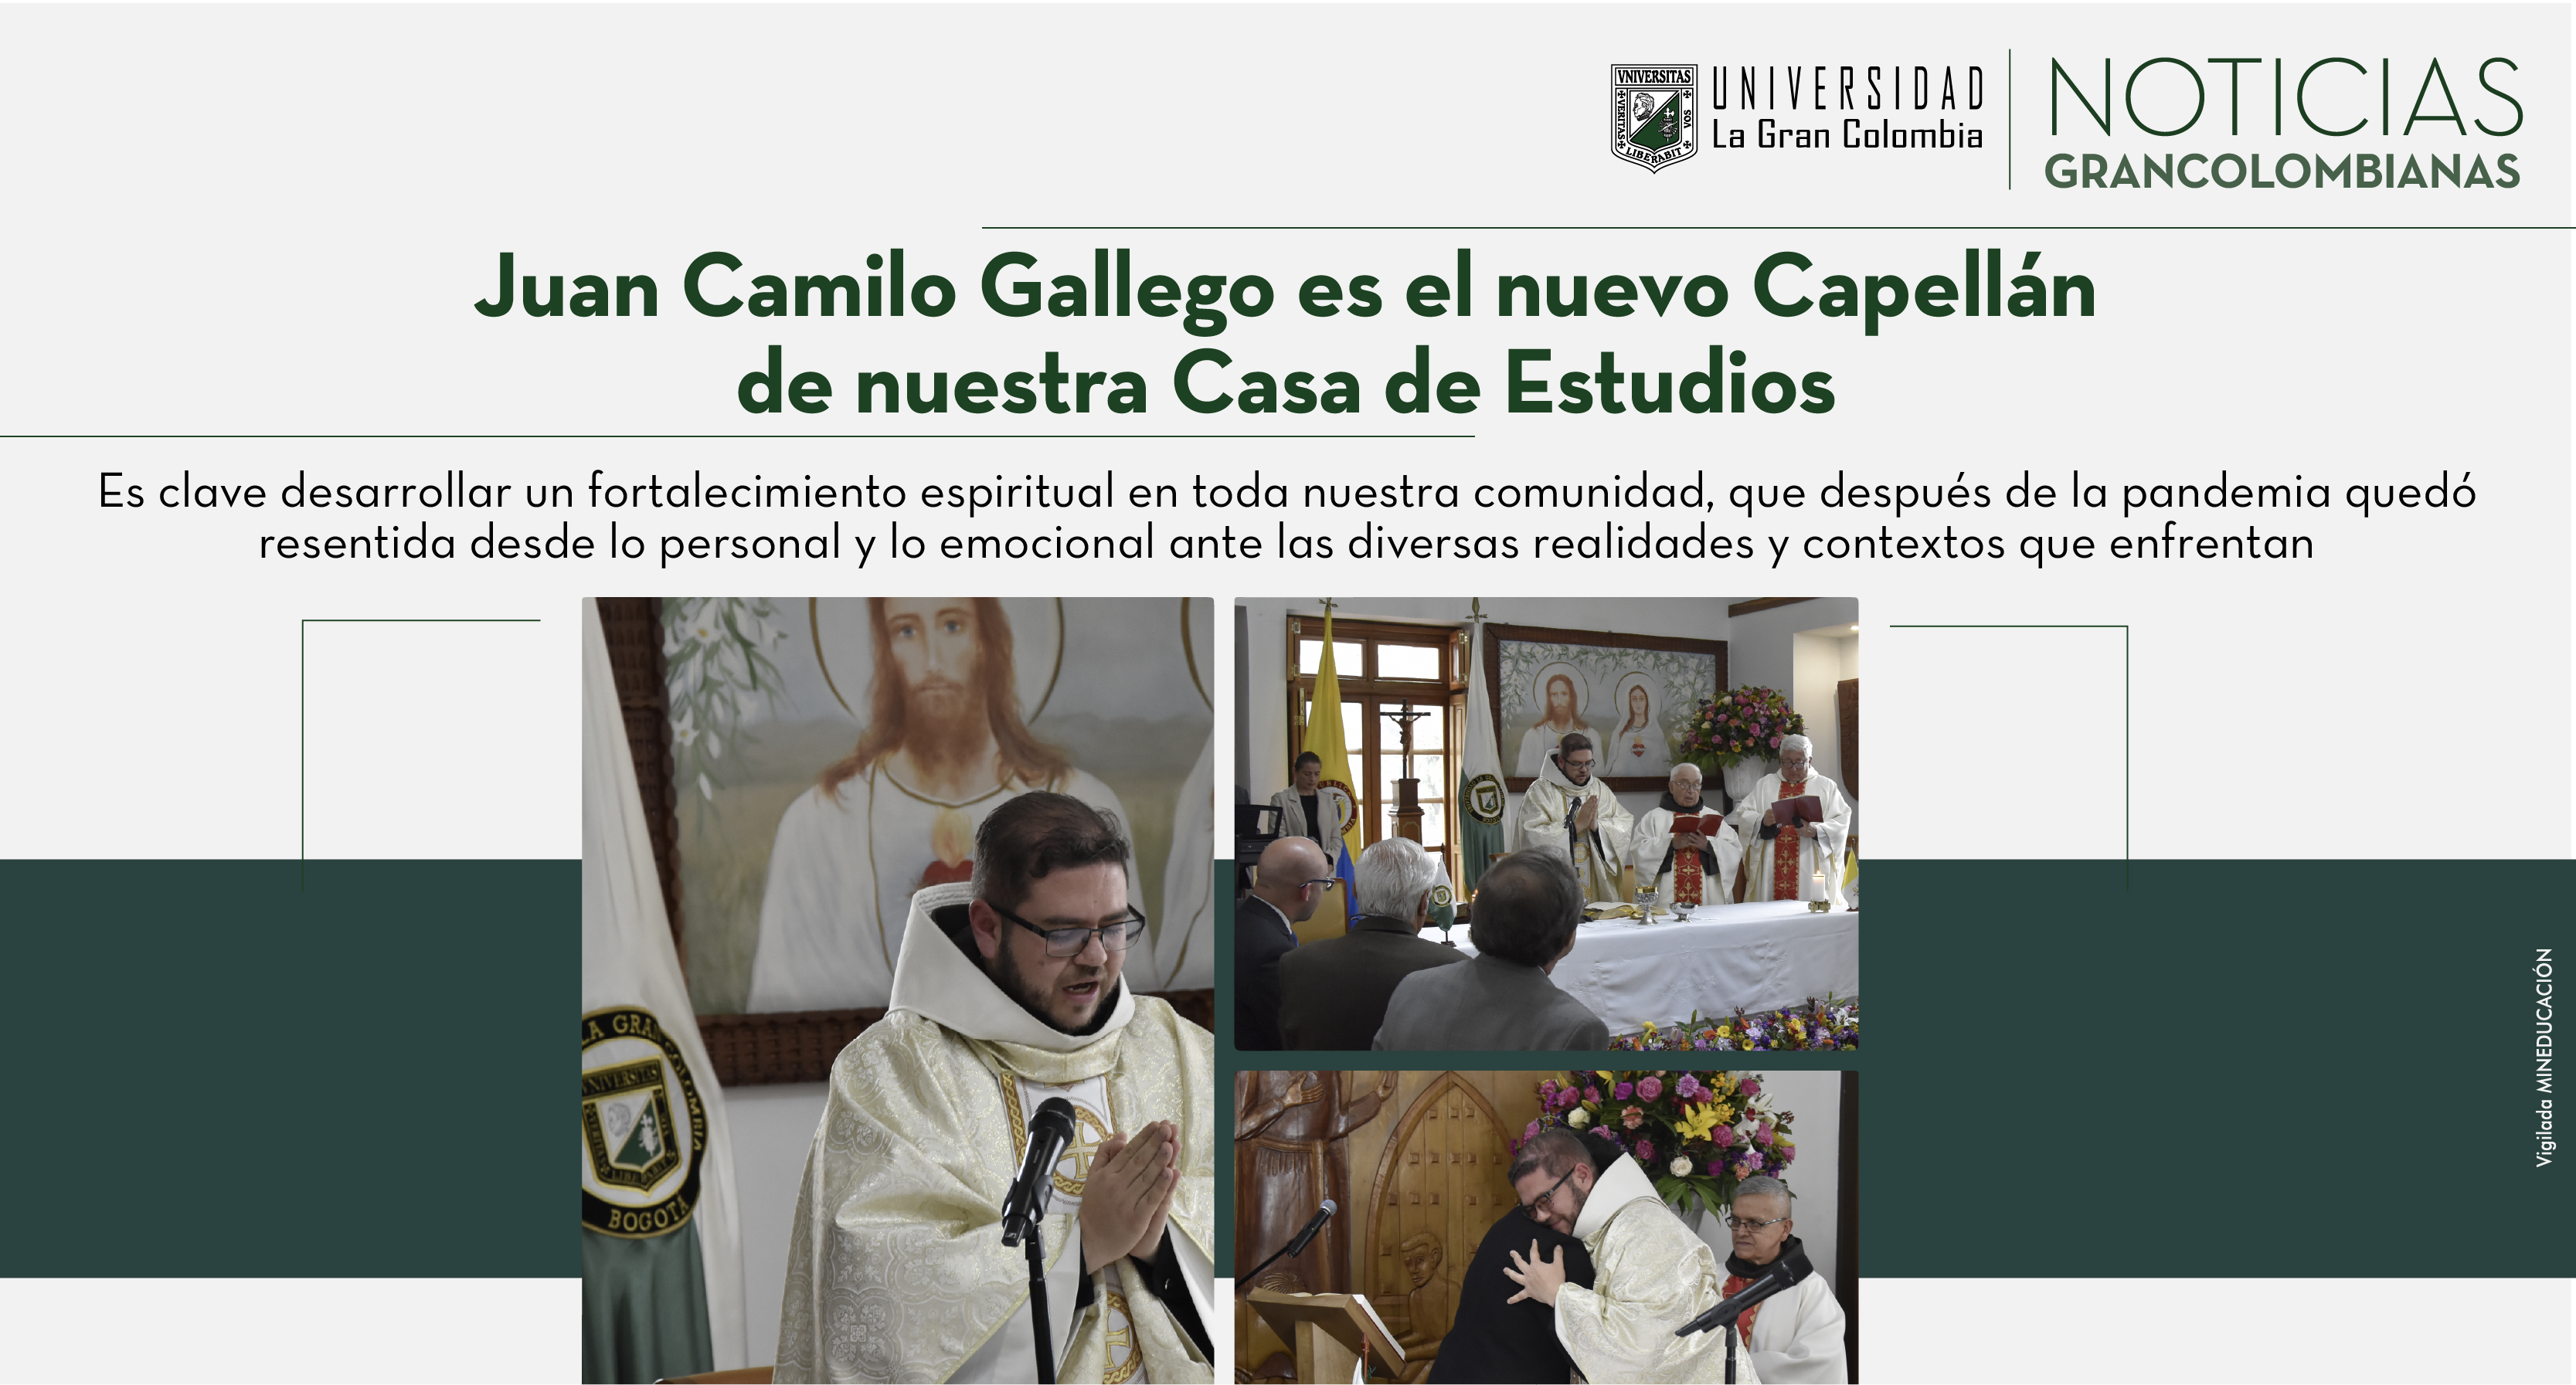 Juan Camilo Gallego es el nuevo Capellán de nuestra Casa de Estudios